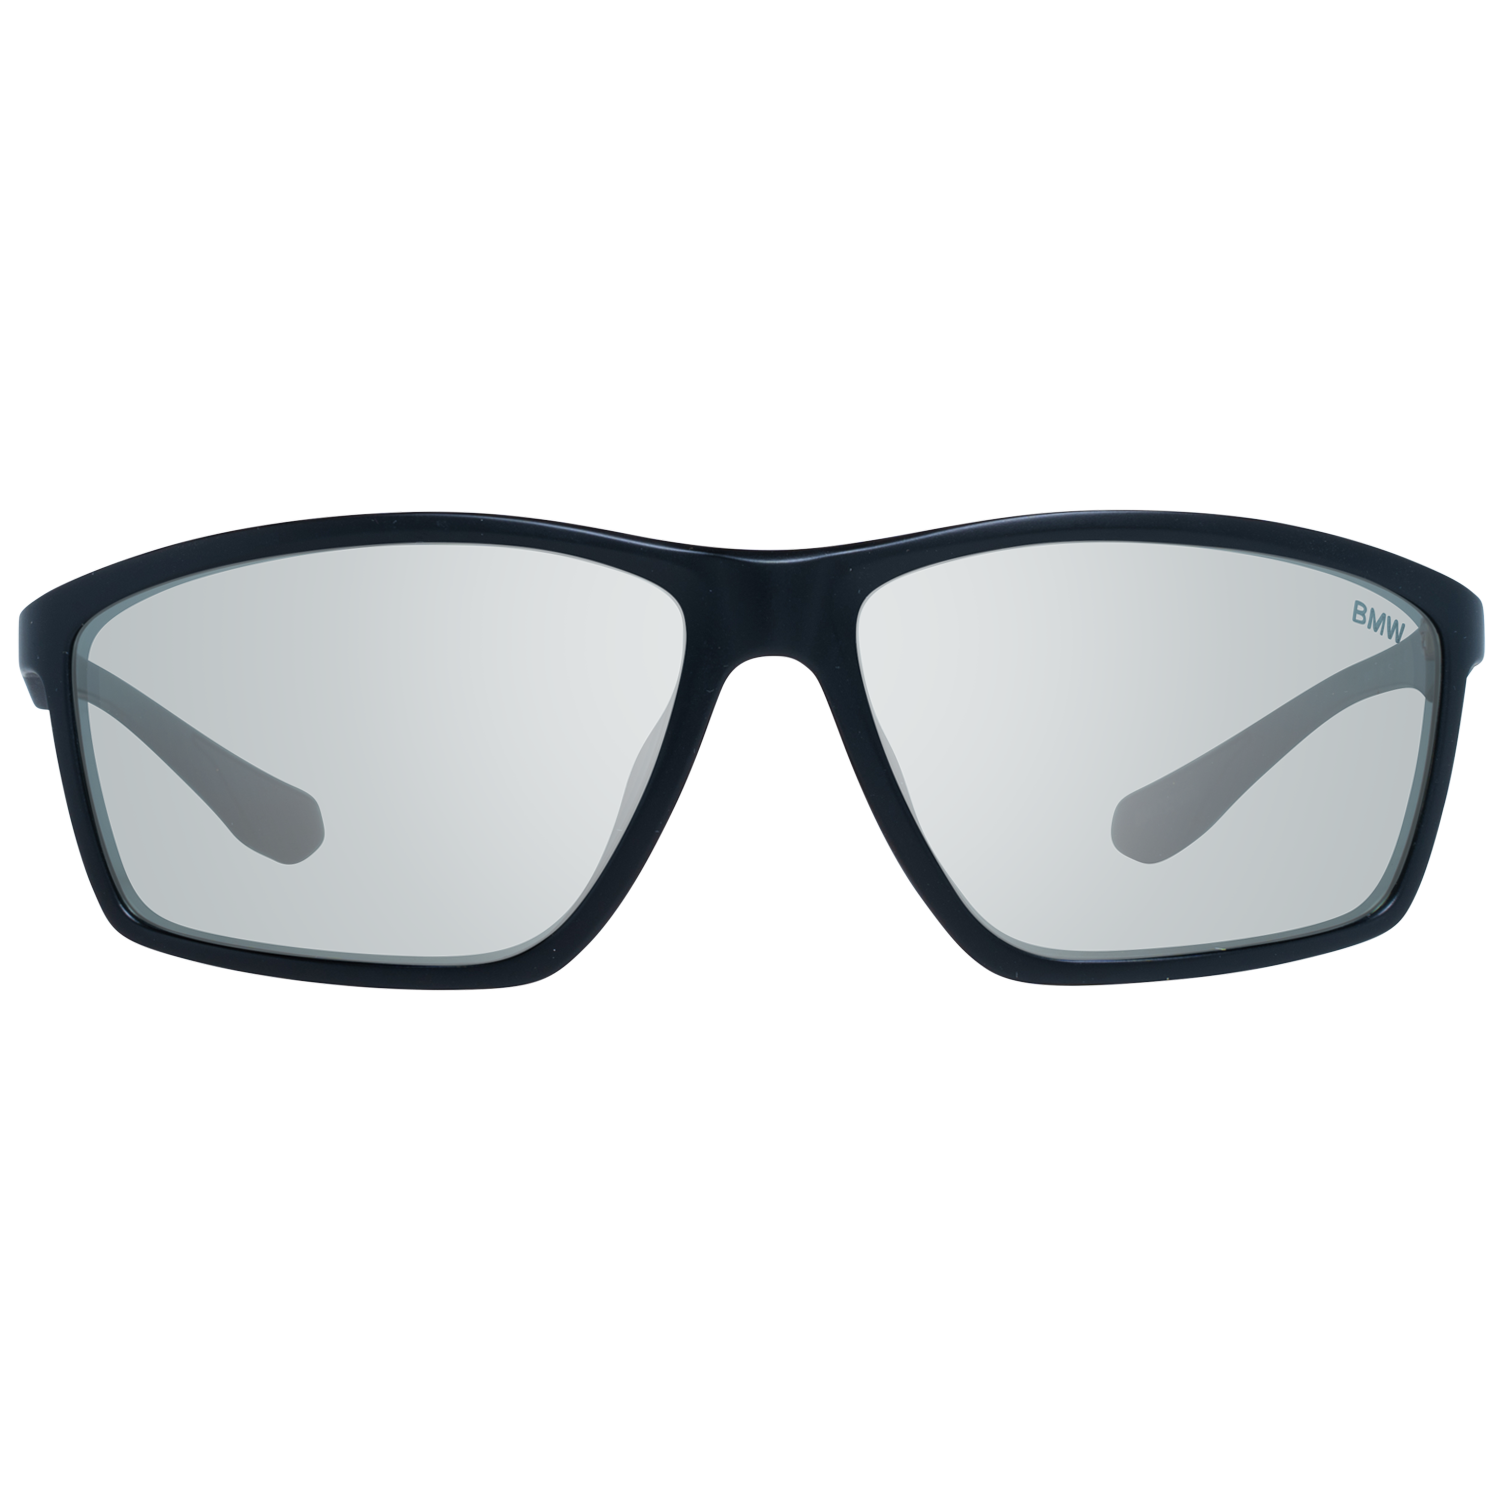 BMW Sunglasses BMW Sunglasses BW0011 02C 63 Eyeglasses Eyewear UK USA Australia 